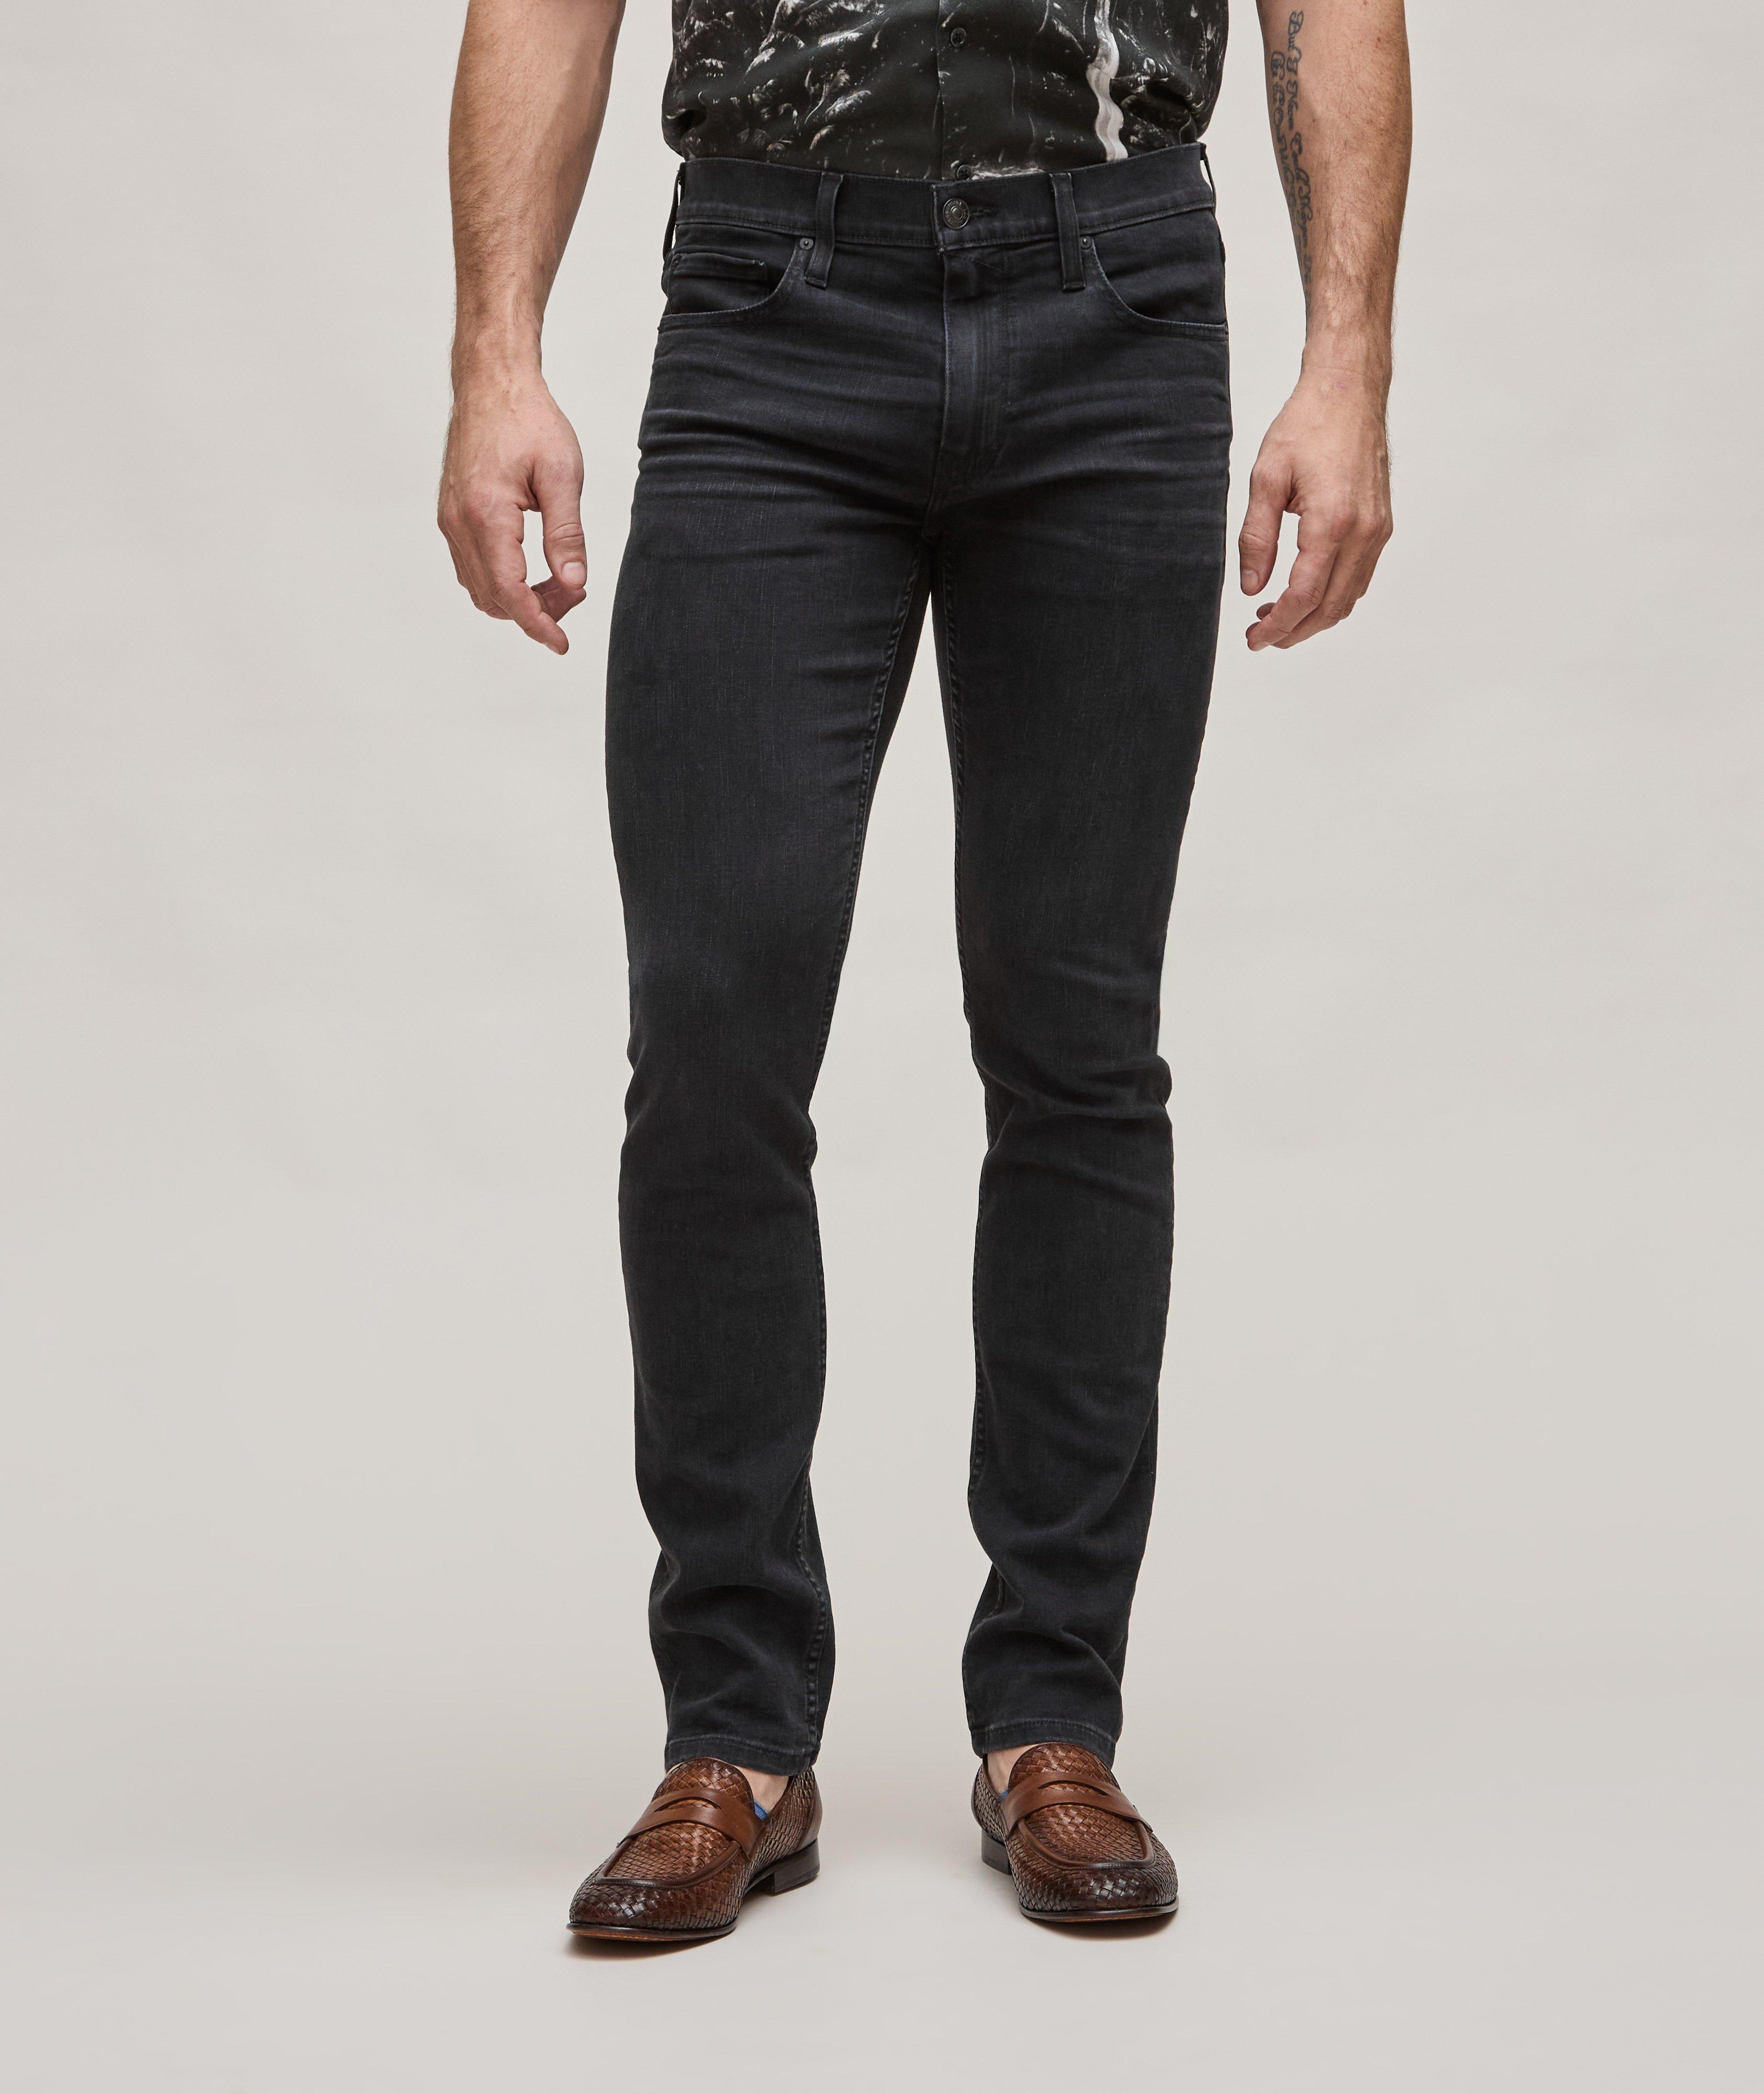 Lennox Slim-Fit Transcend Jeans image 2